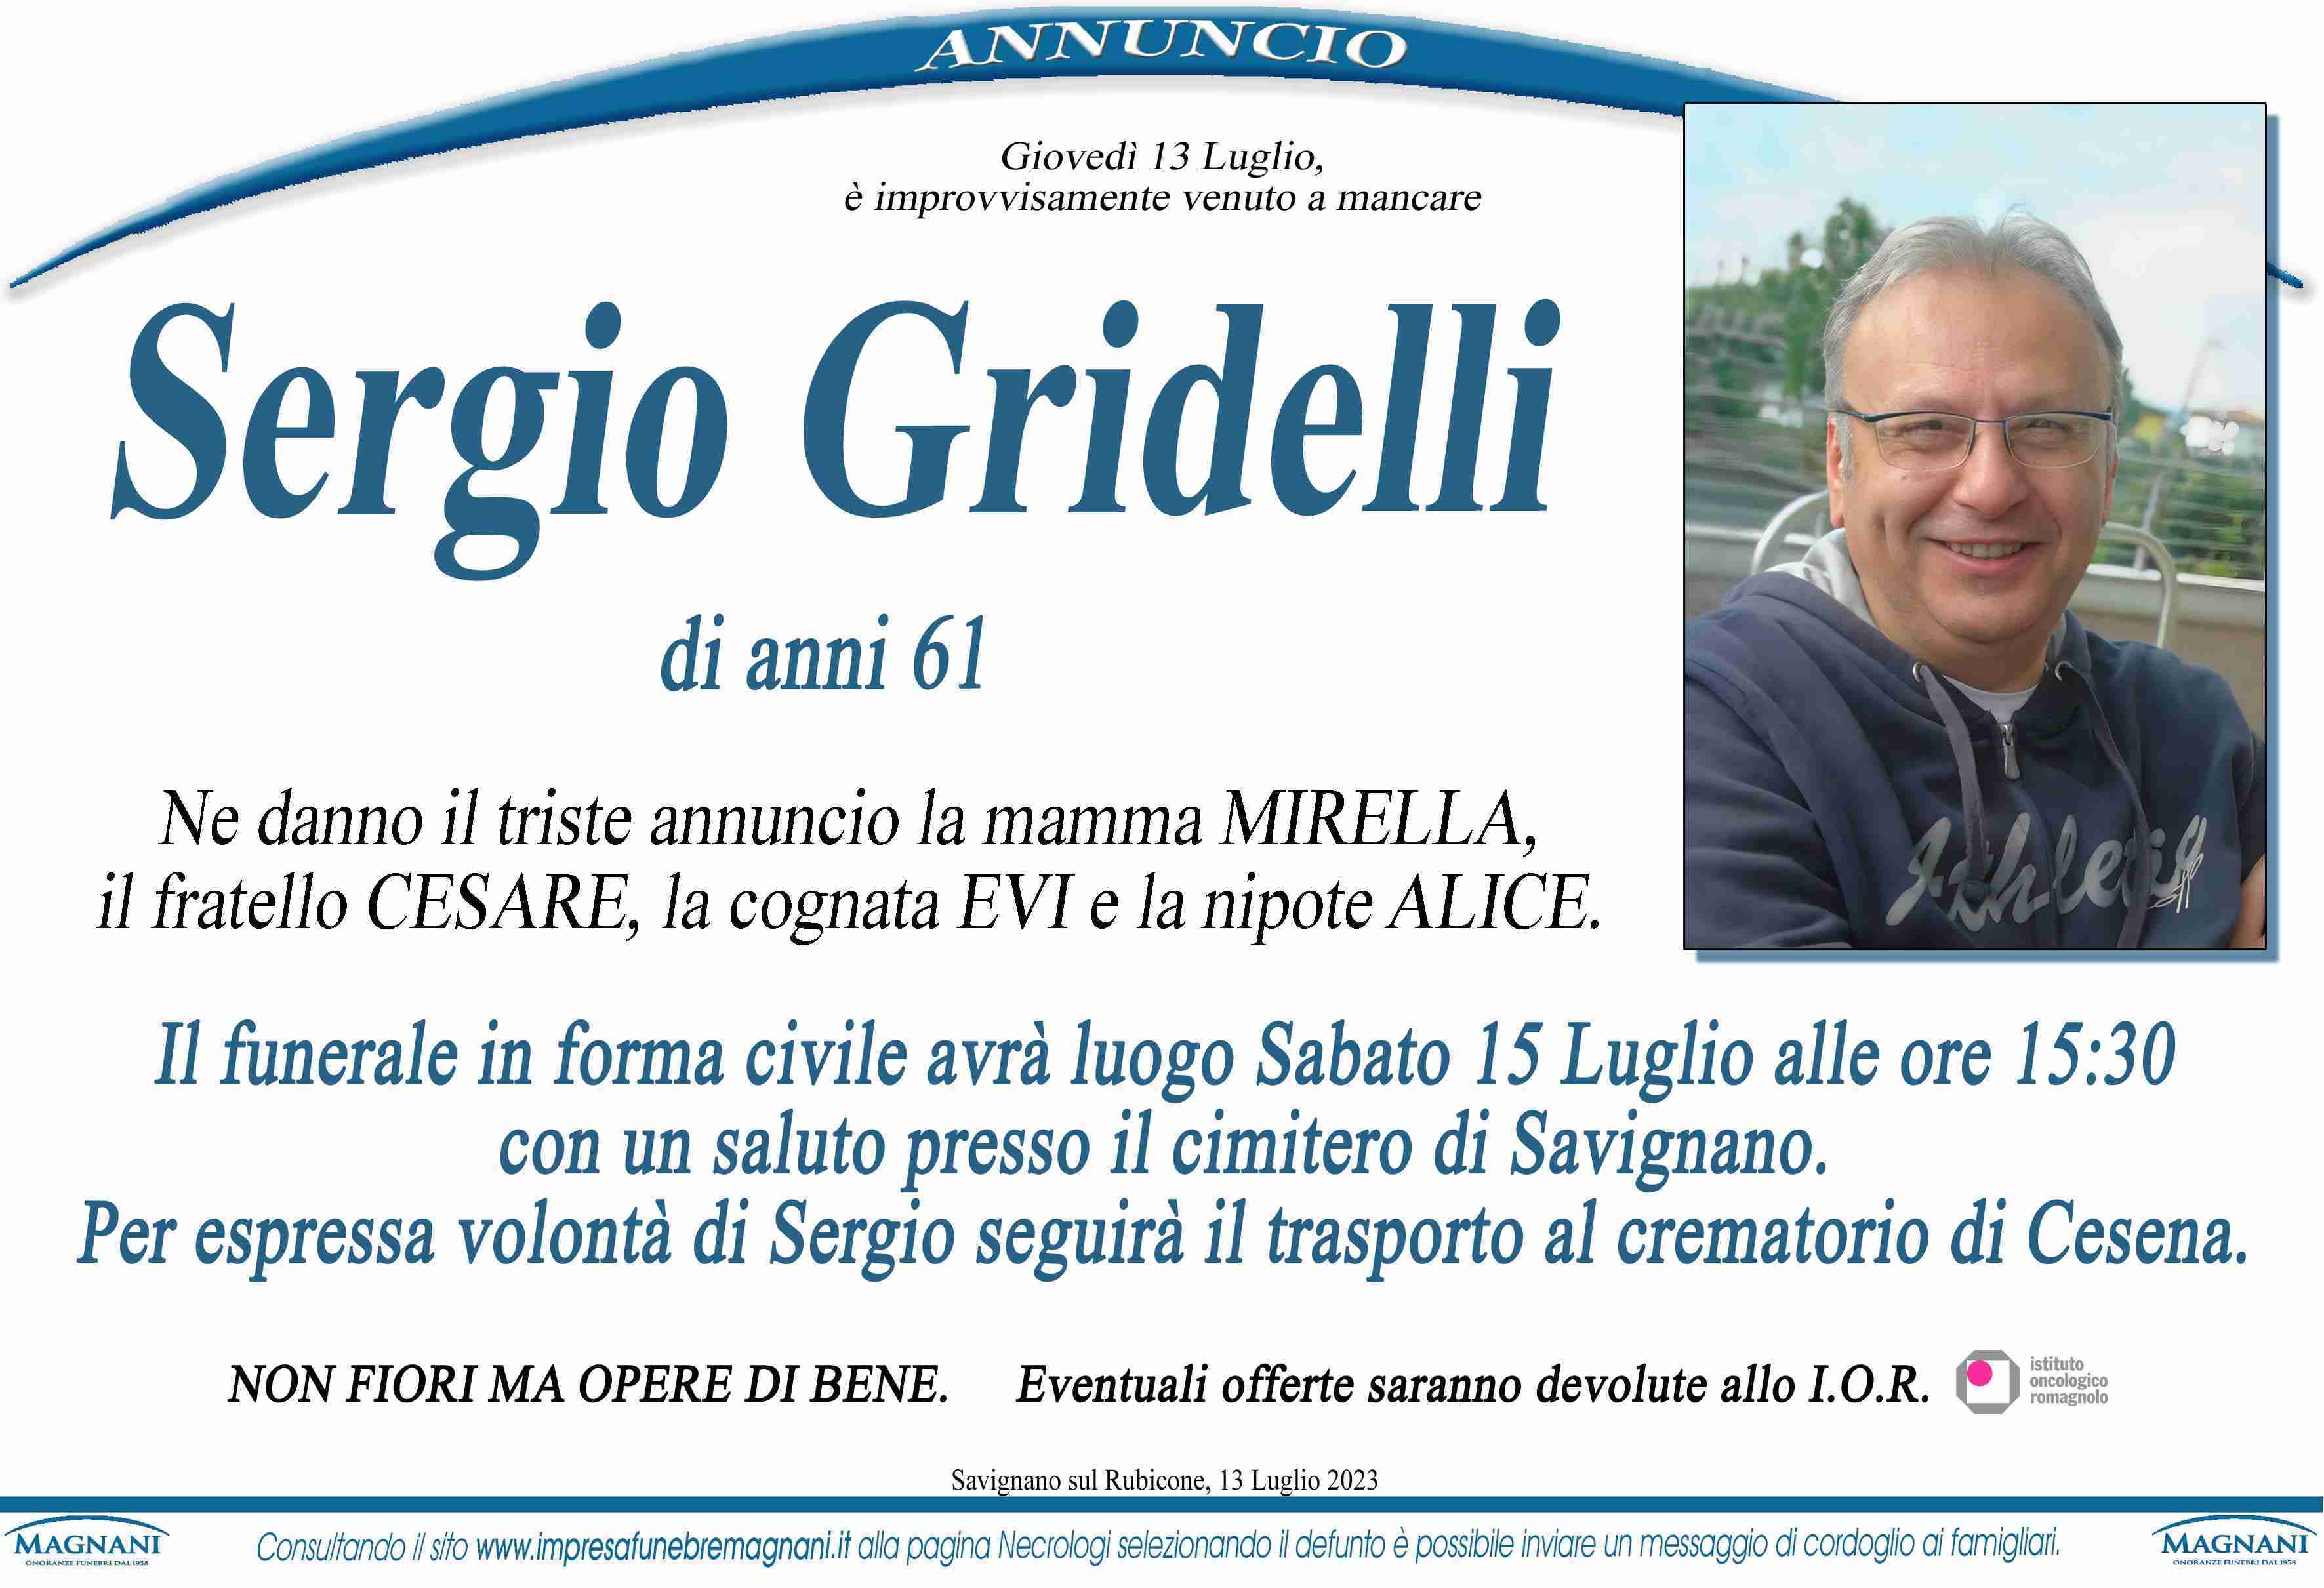 Sergio Gridelli